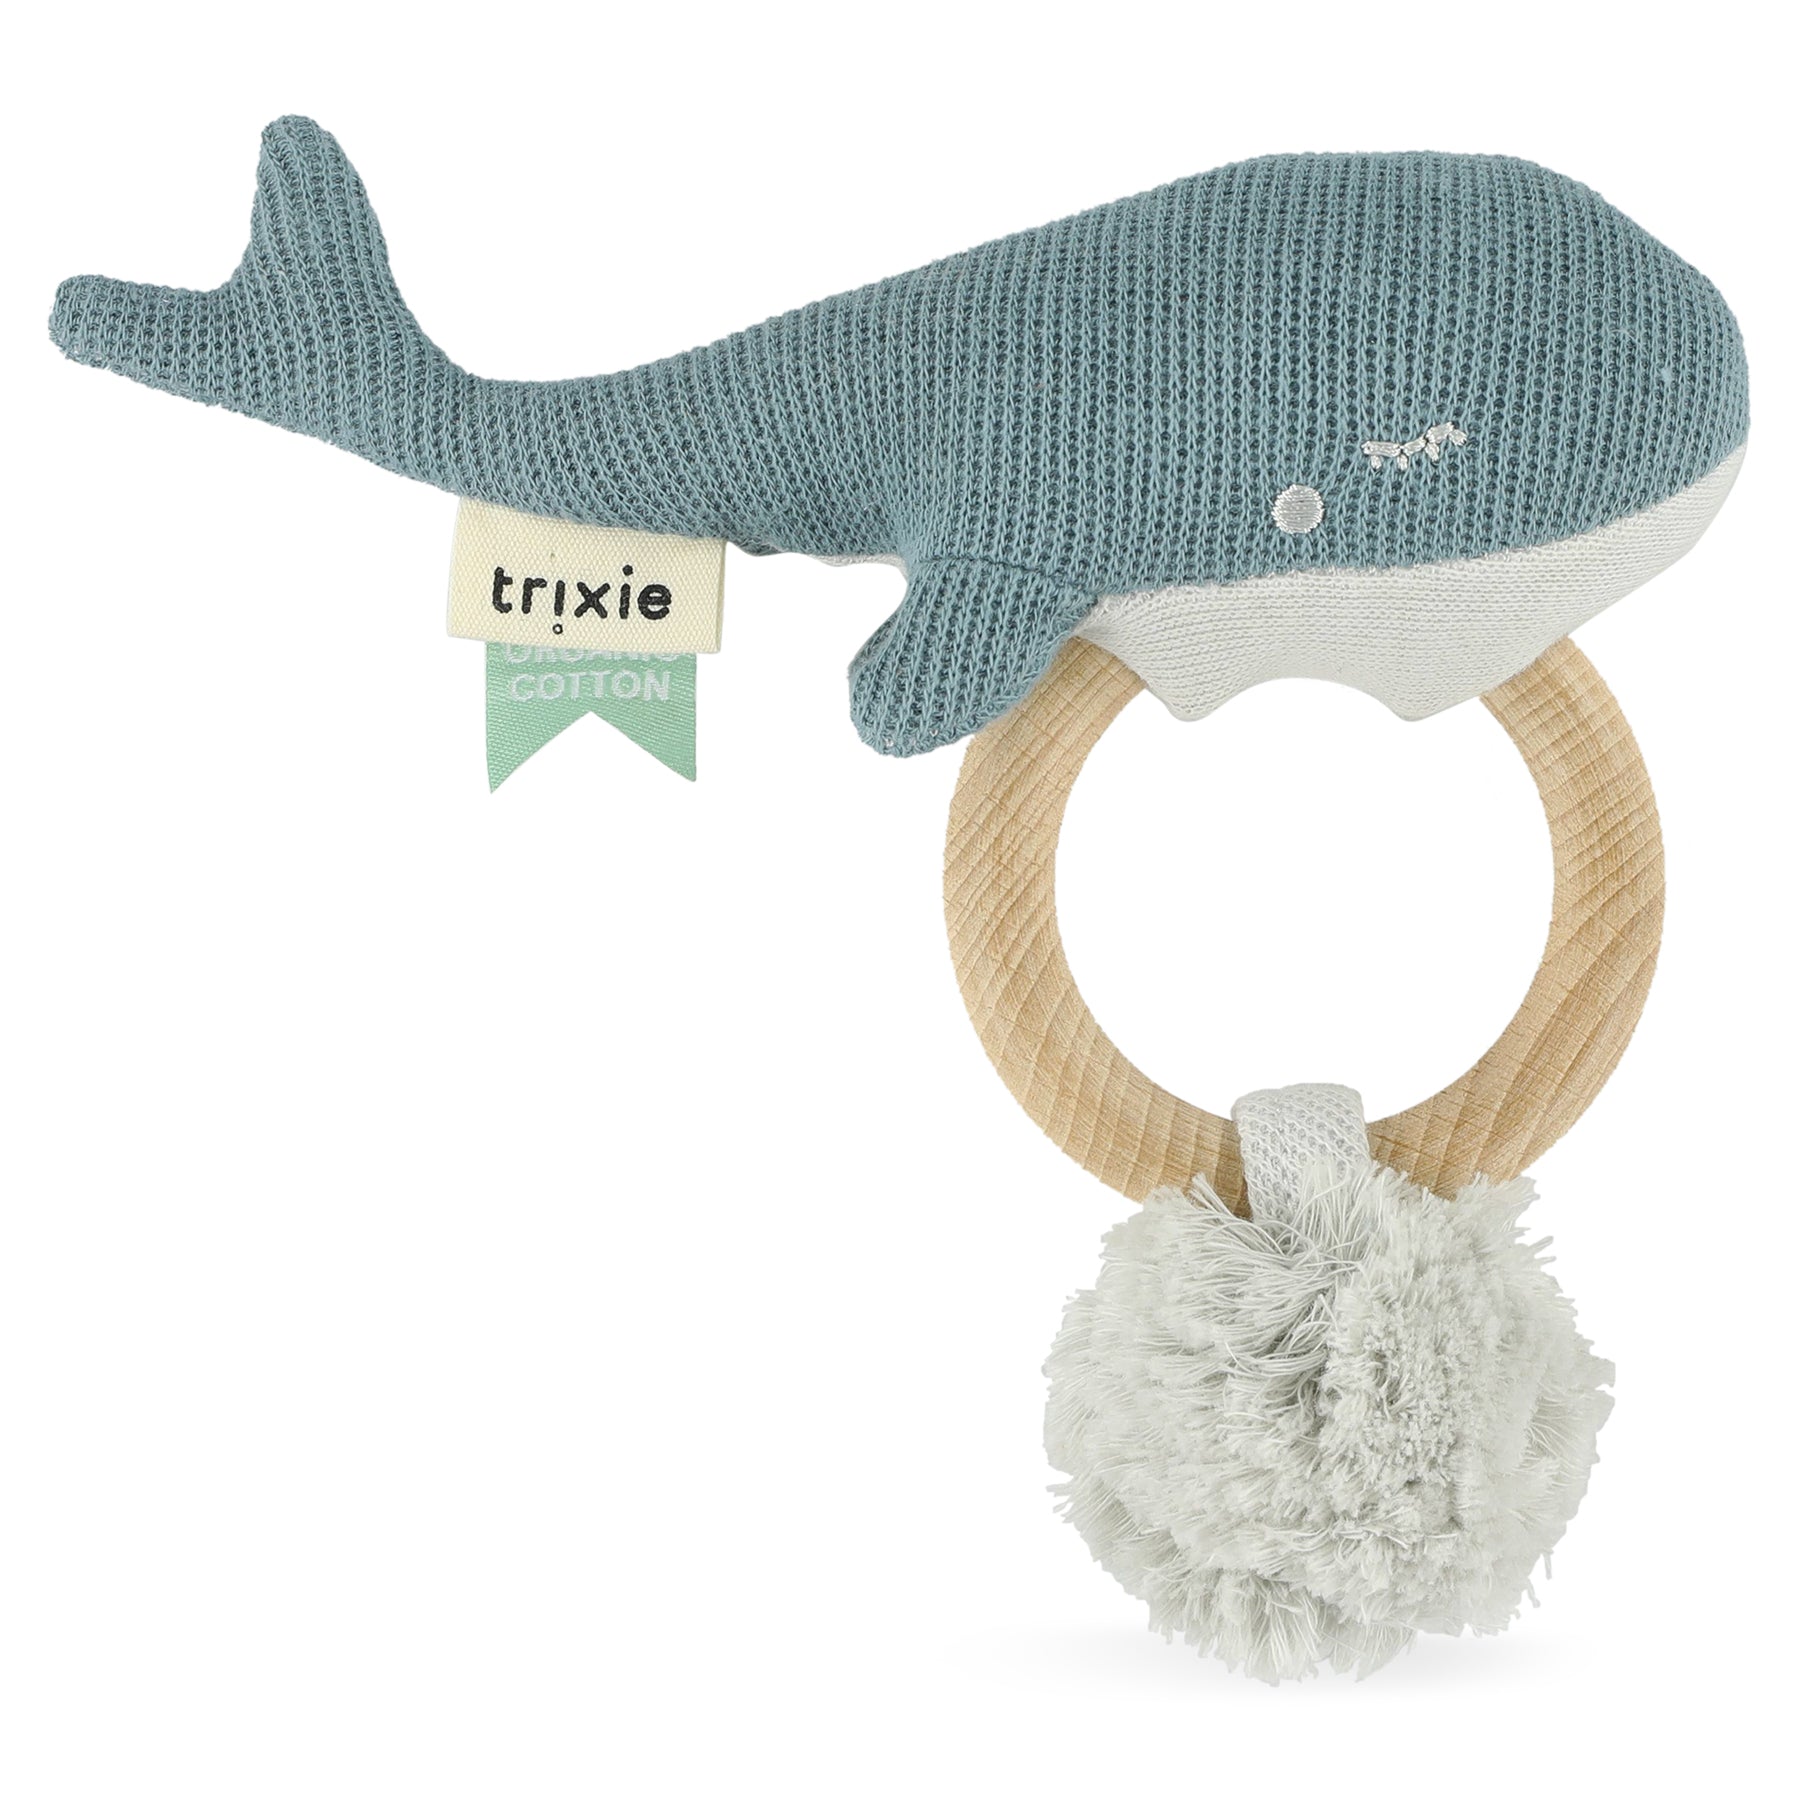 Trixie Kuscheliger Wal Beißring für Glückseligkeit im Kinderzimmer! 🐳